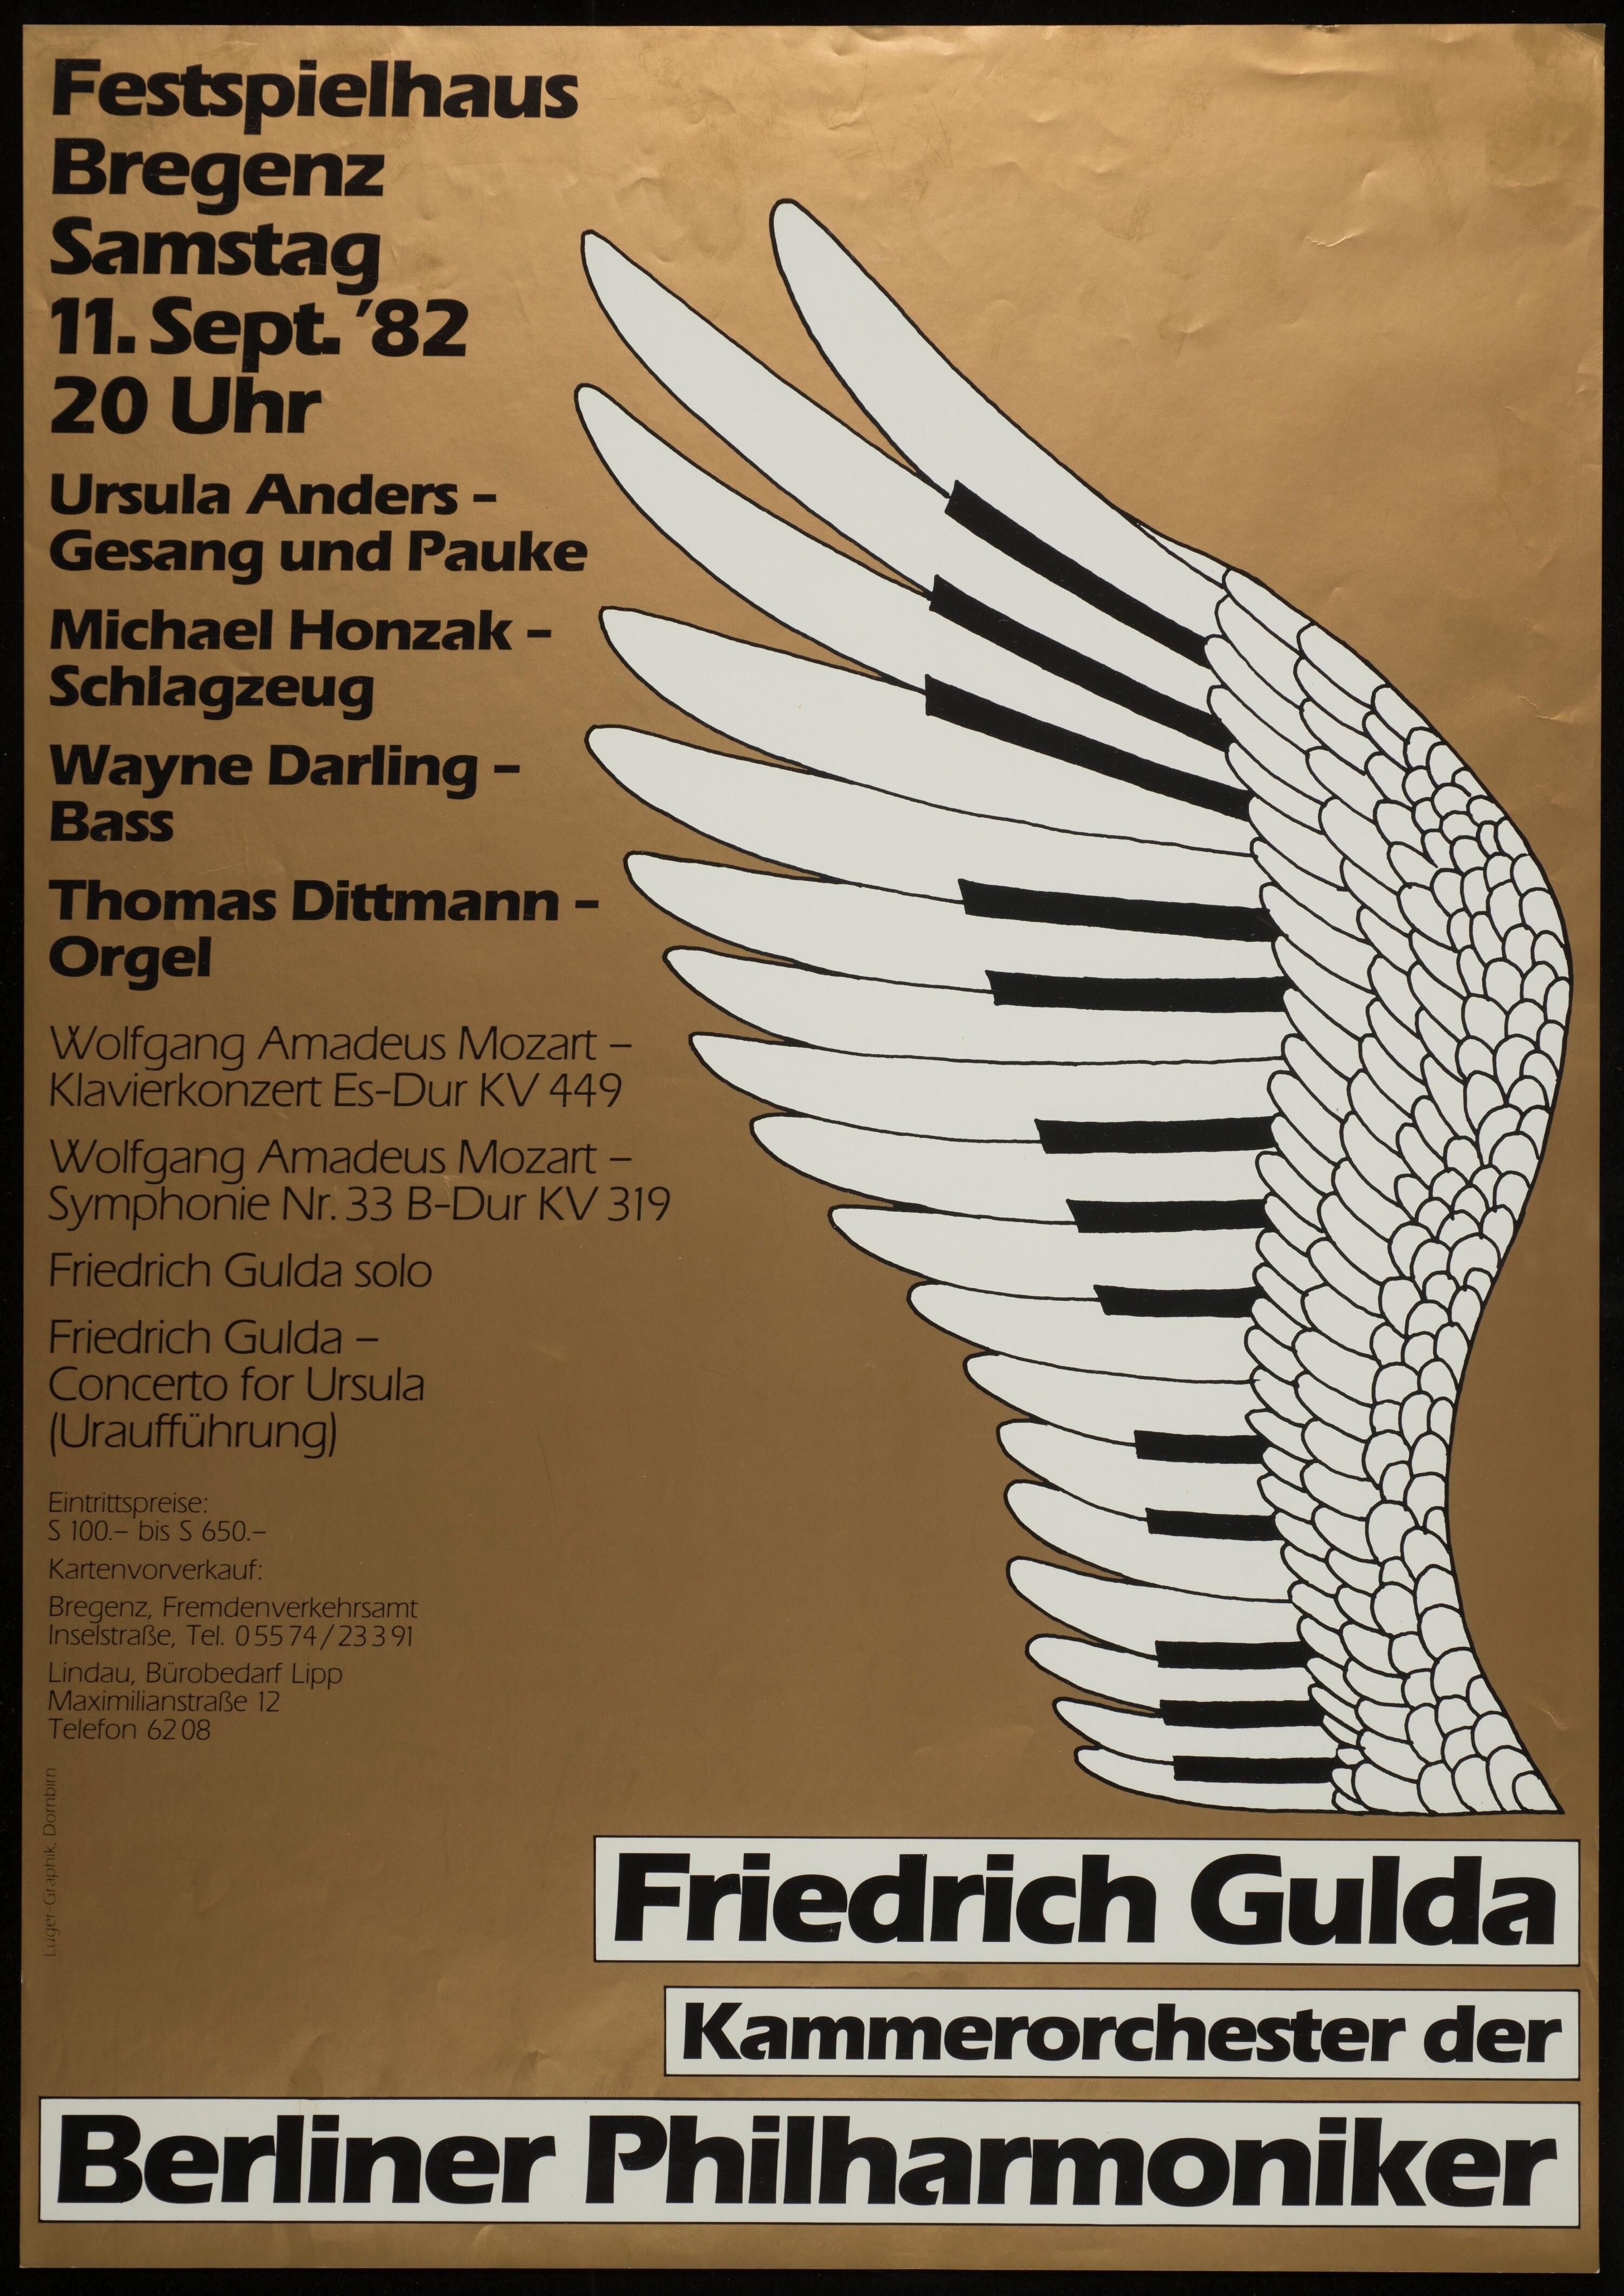 Friedrich Gulda></div>


    <hr>
    <div class=